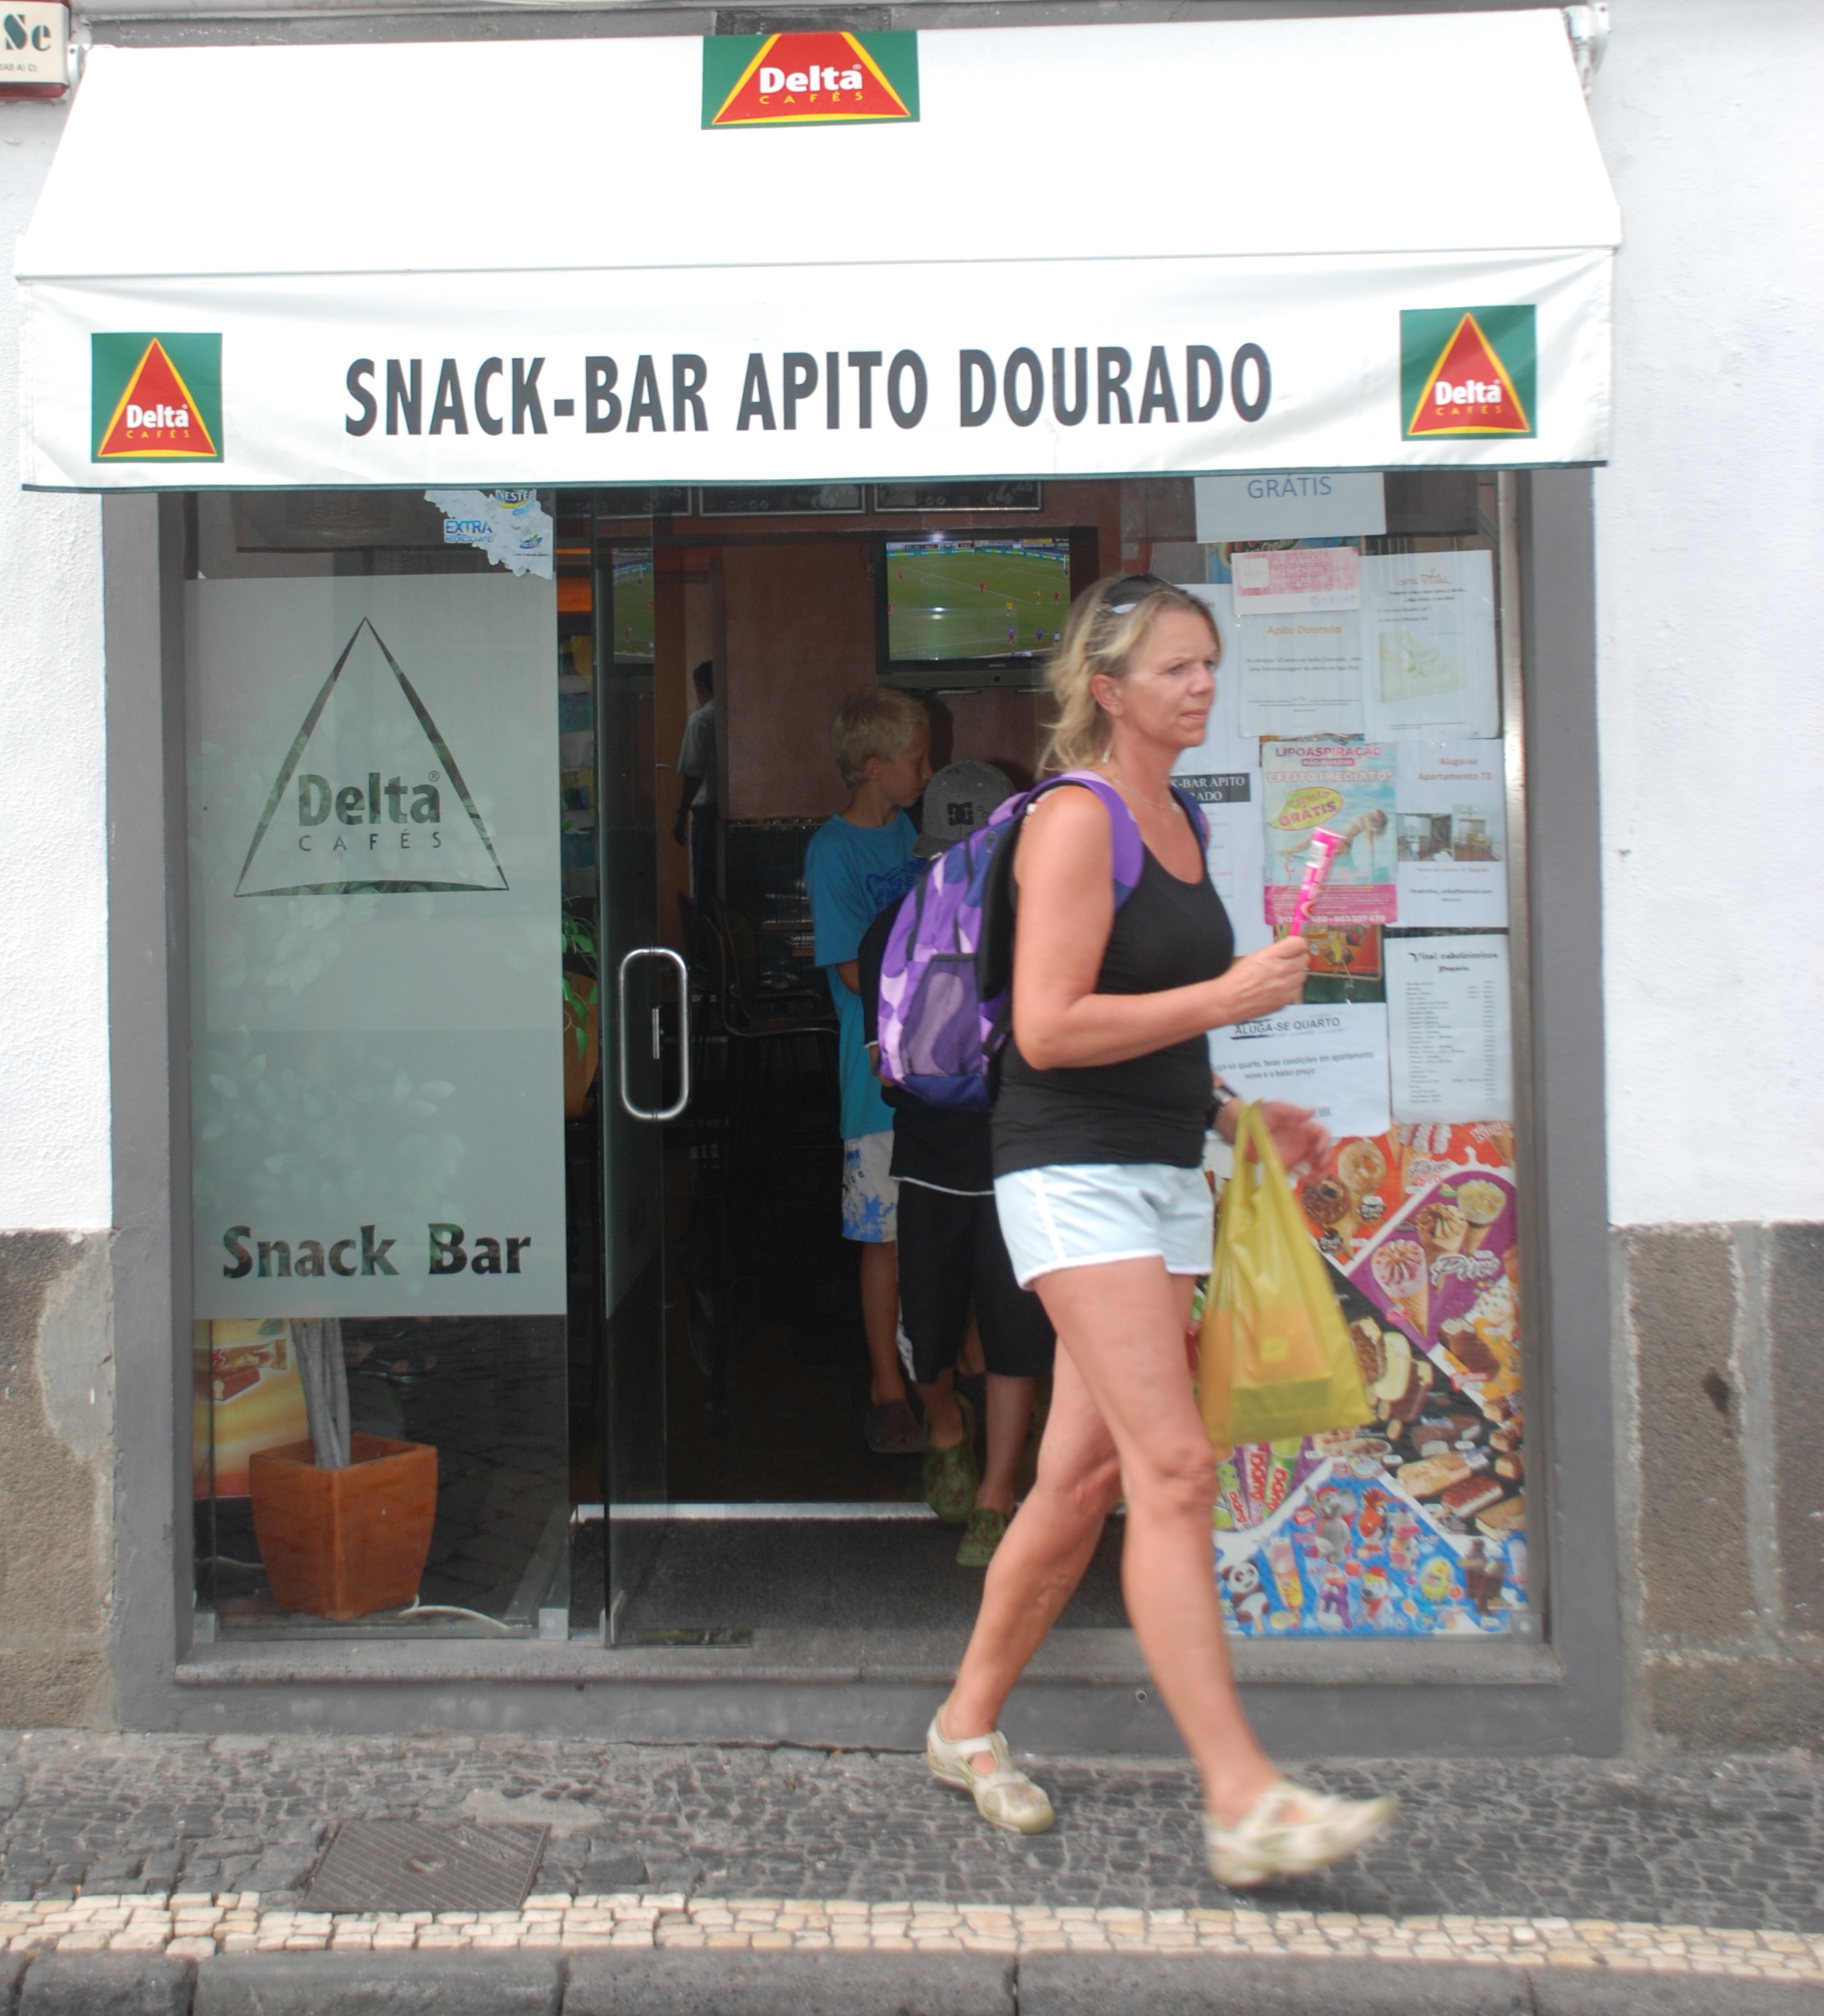 Ponta Delgada; Snack Bar; Delta cafés